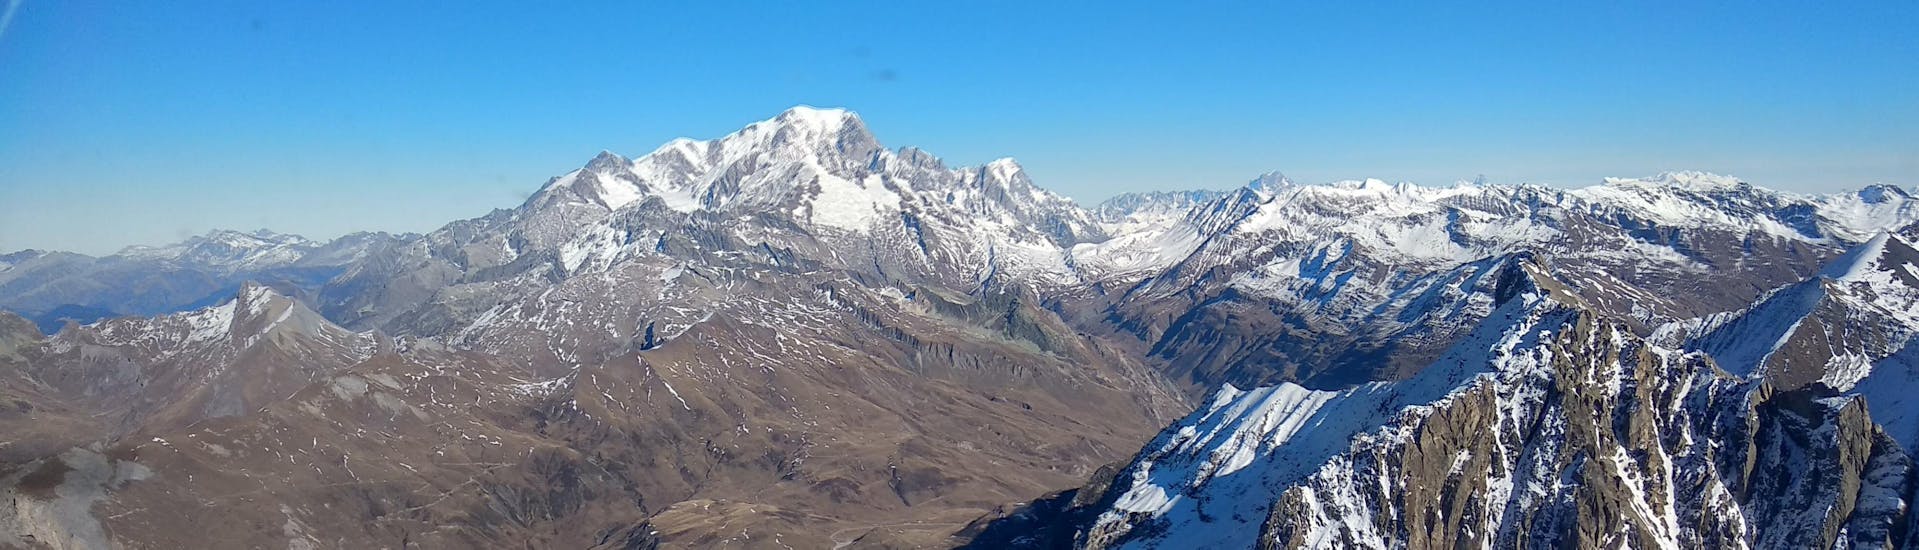 Le pilote commente les paysages lors d'un vol en ULM au-dessus de la vallée de Chamonix.